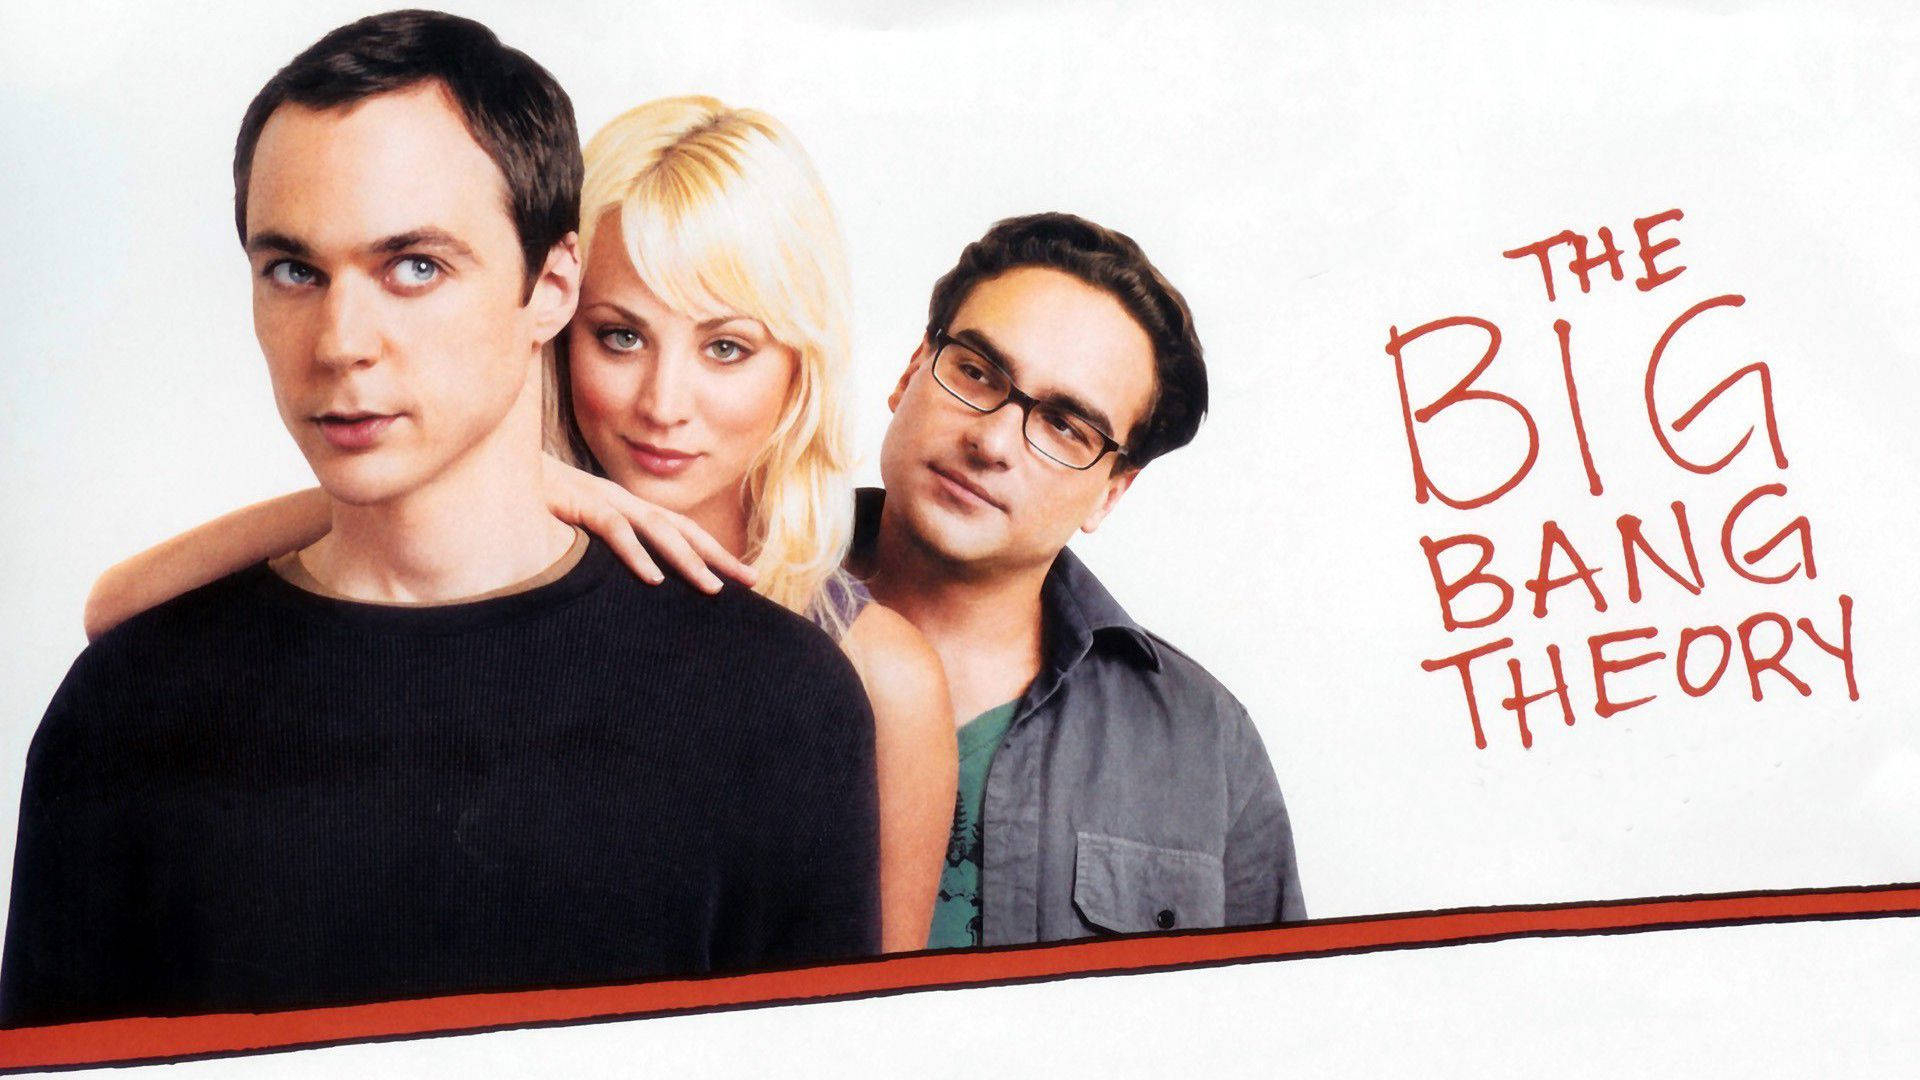 1920x1080 Download The Big Bang Theory Star Poster Wallpaper